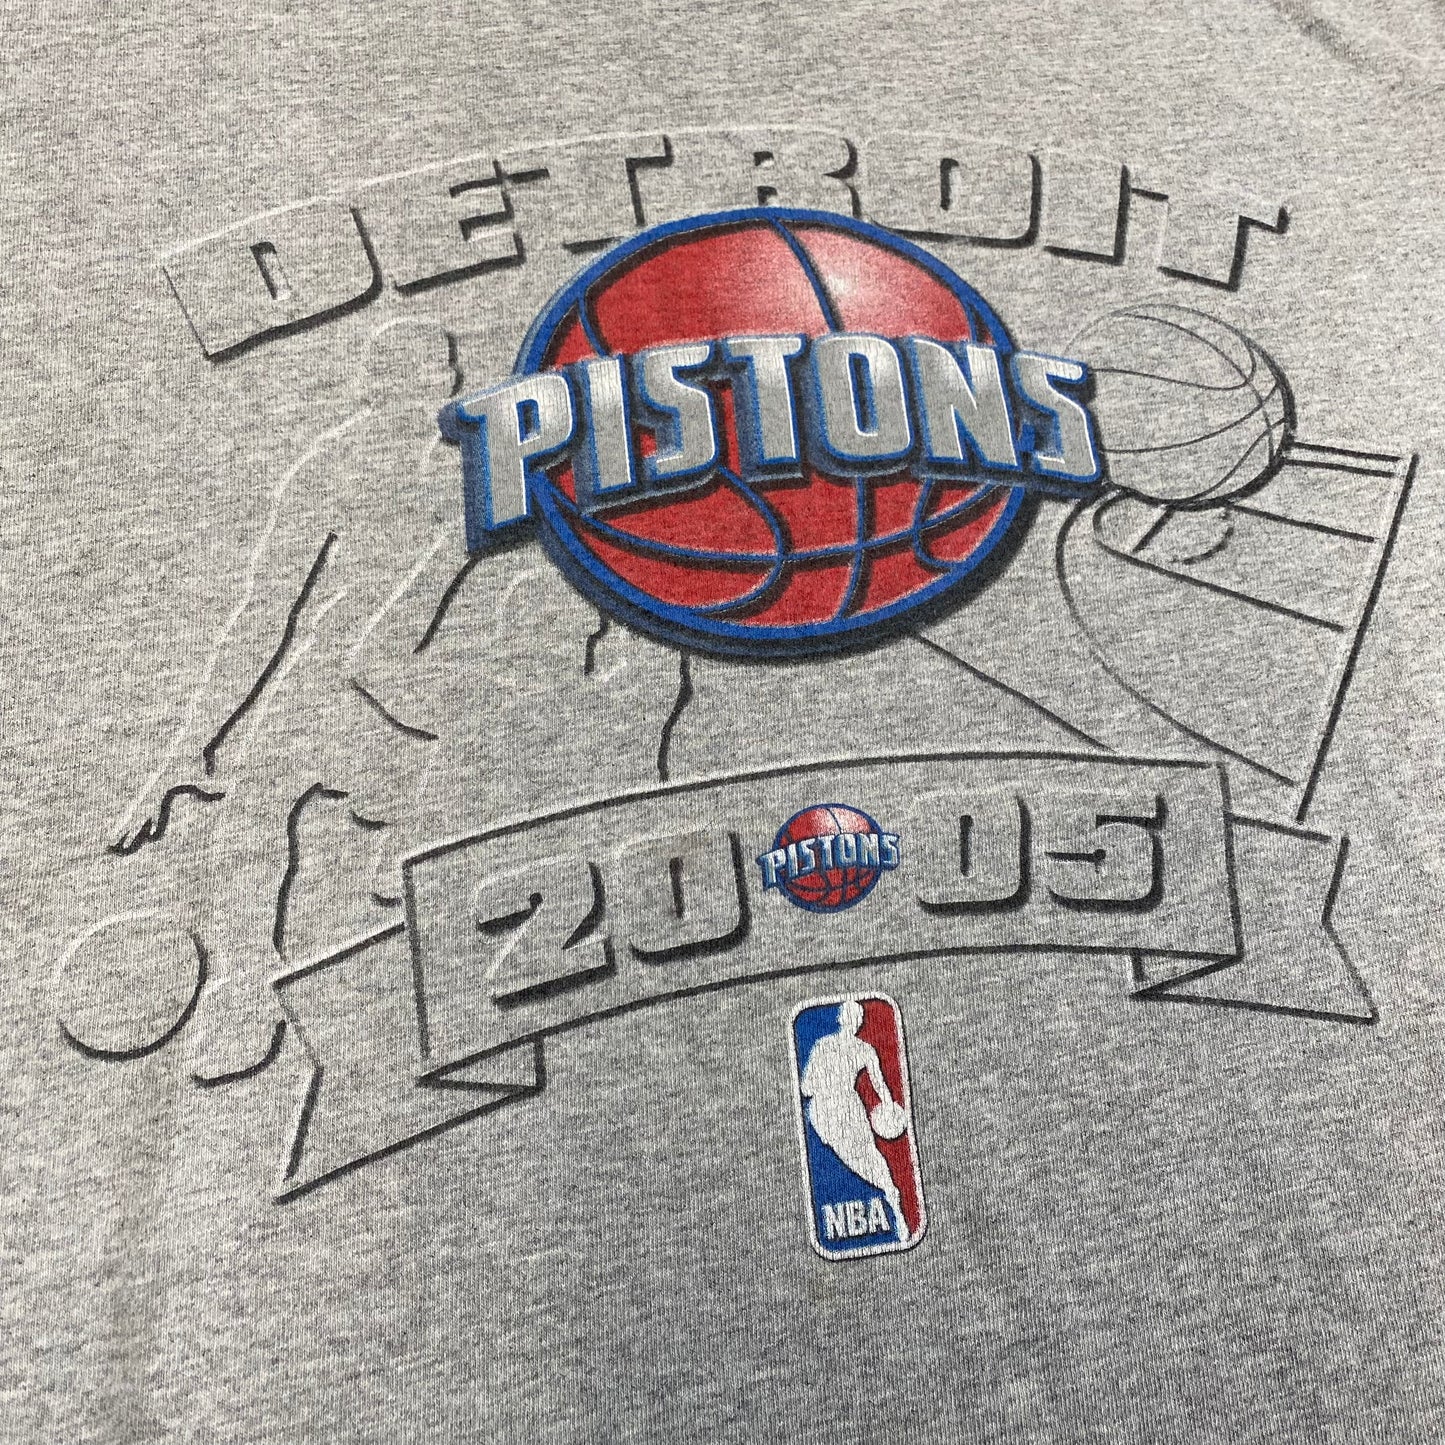 2005 Detroit Pistons T-shirt Sz M (A545)